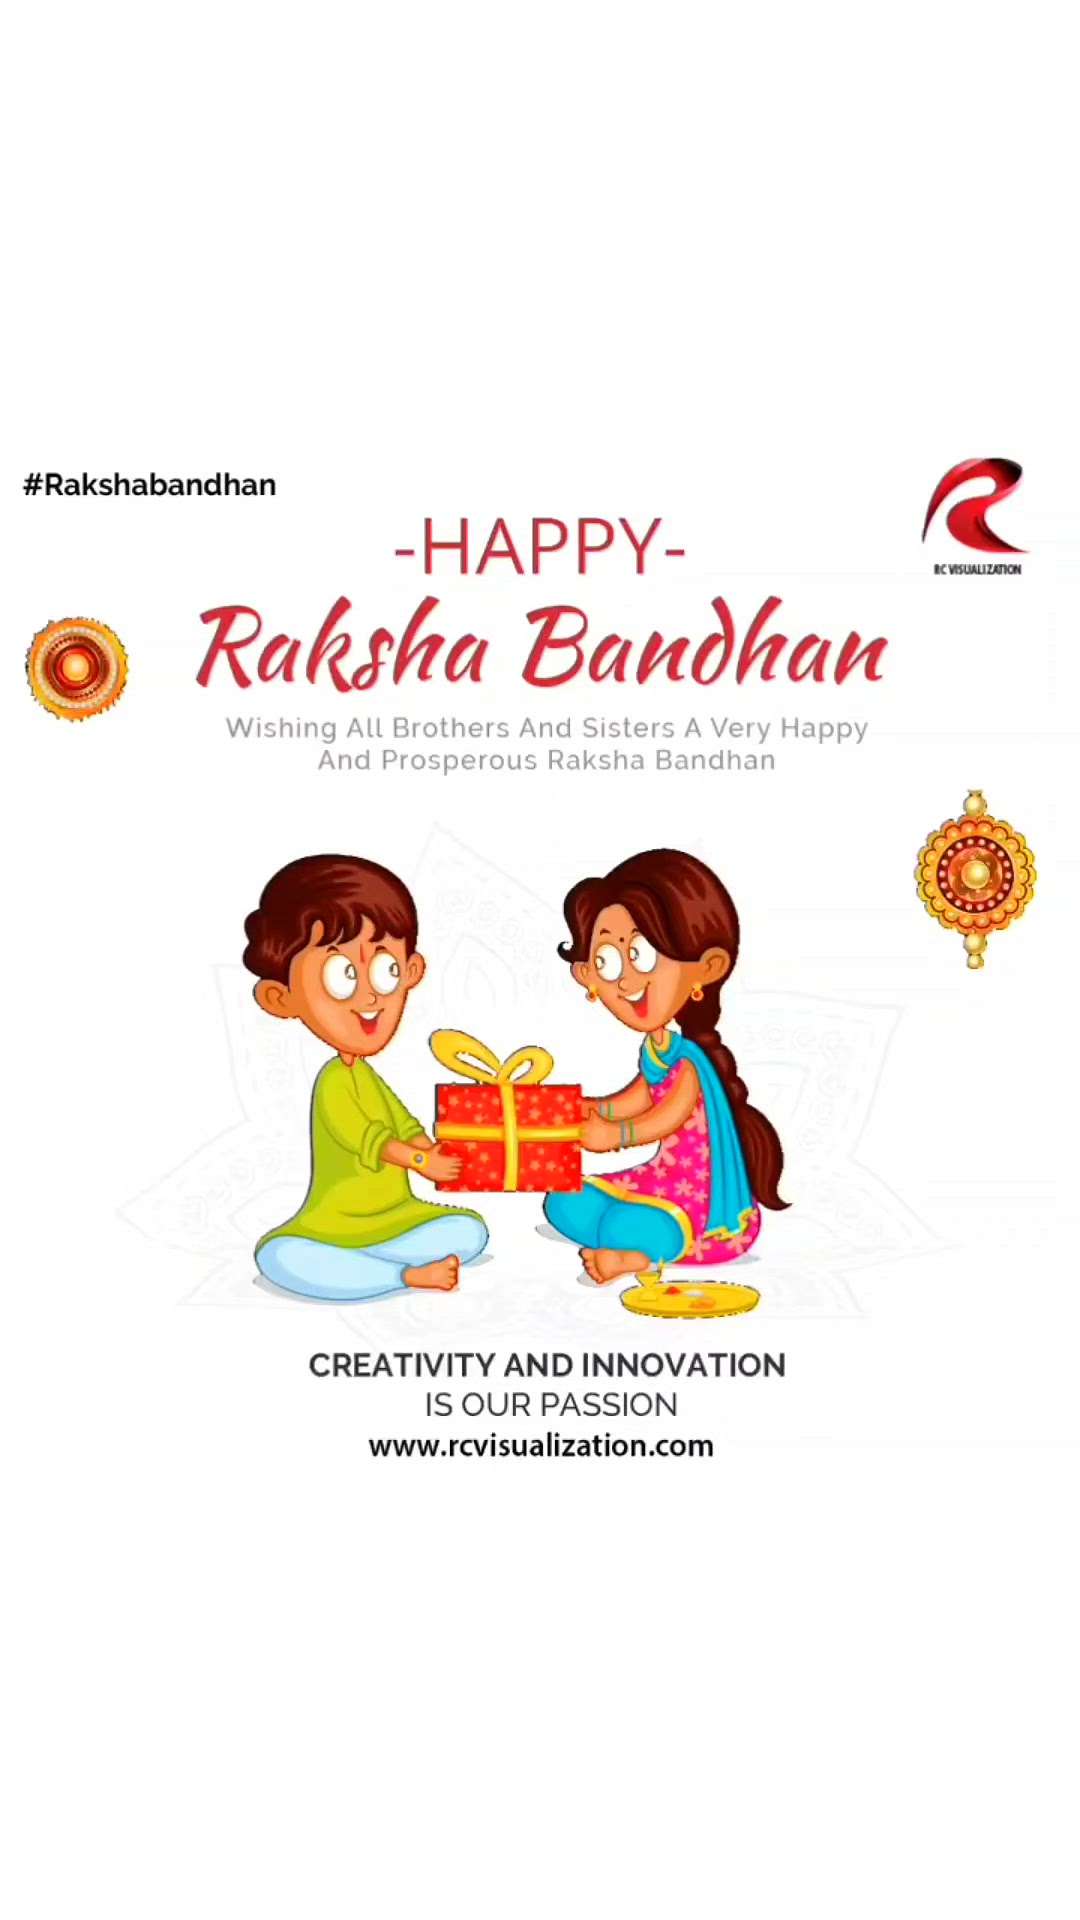 #happyrakshabandhan